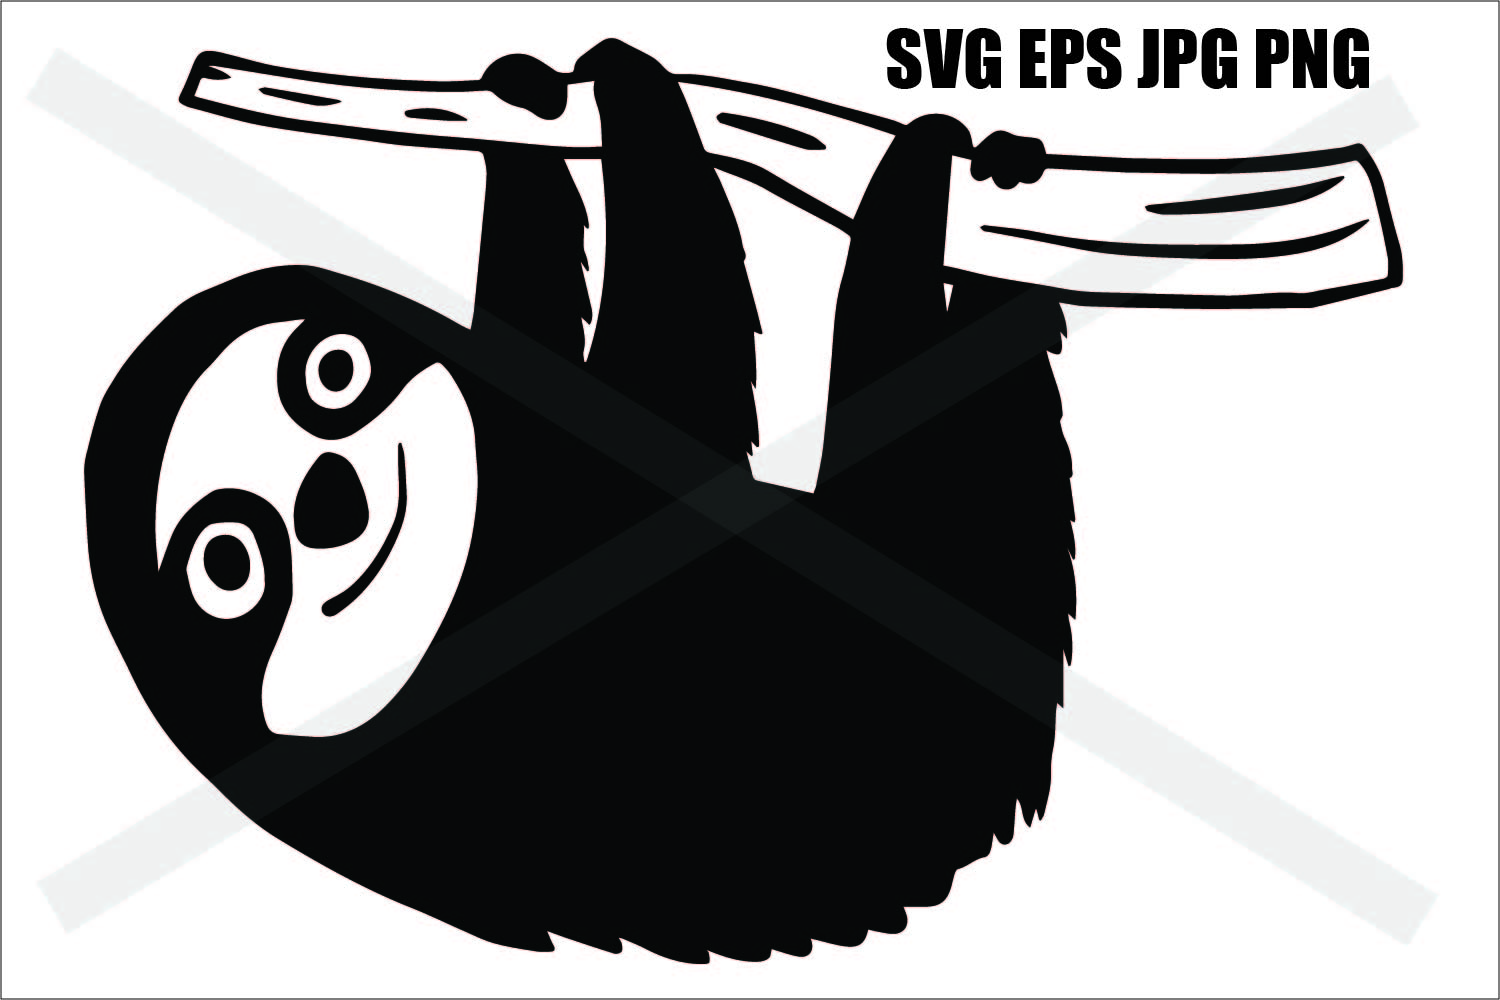 Sloth hanging - SVG EPS JPG PNG (441364) | Illustrations | Design Bundles